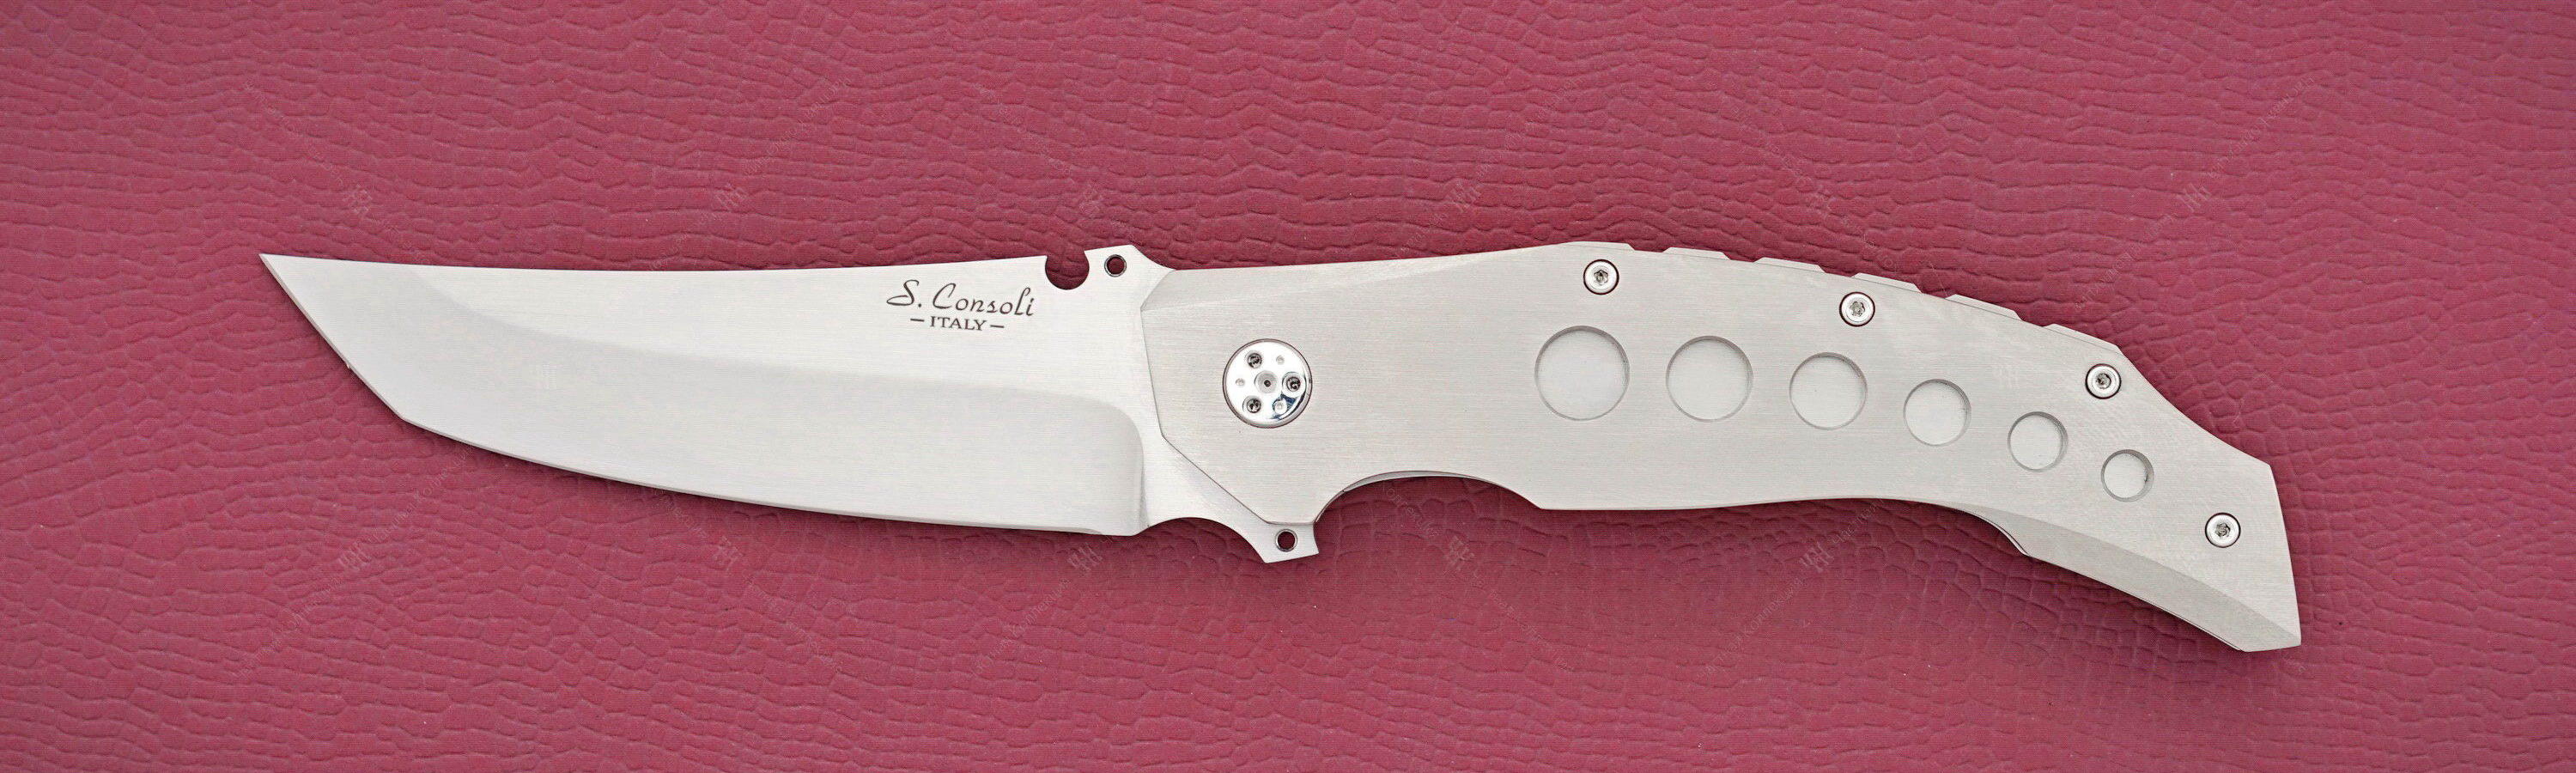 Sergio Consoli нож N300 titanium